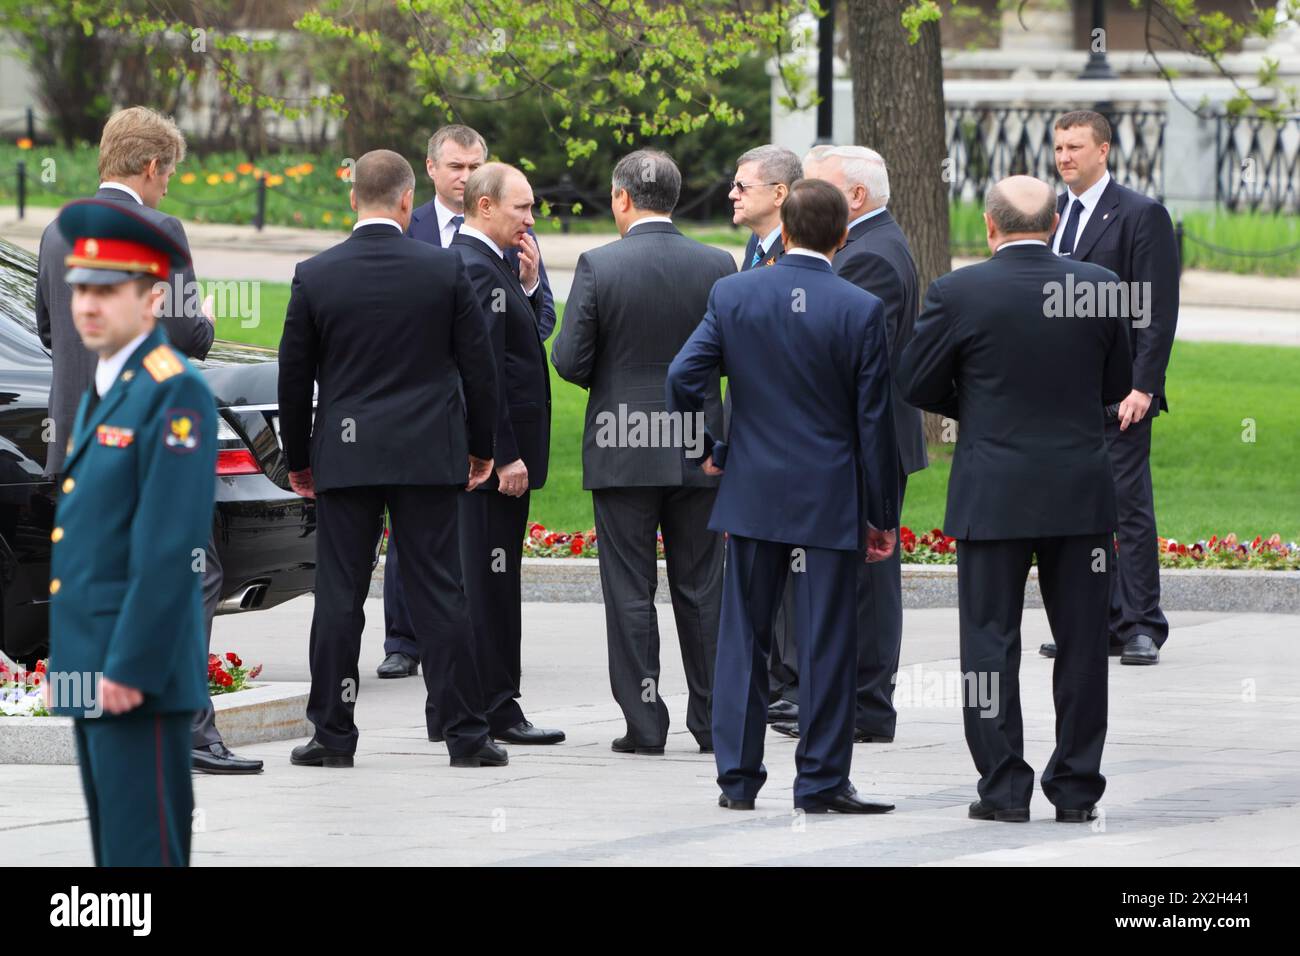 MOSCOU - 8 MAI : le premier ministre Vladimir Poutine, les gardes du corps et les députés à la Douma d'État lors de la cérémonie de dépôt de gerbes sur la tombe du soldat inconnu à la victoire D. Banque D'Images